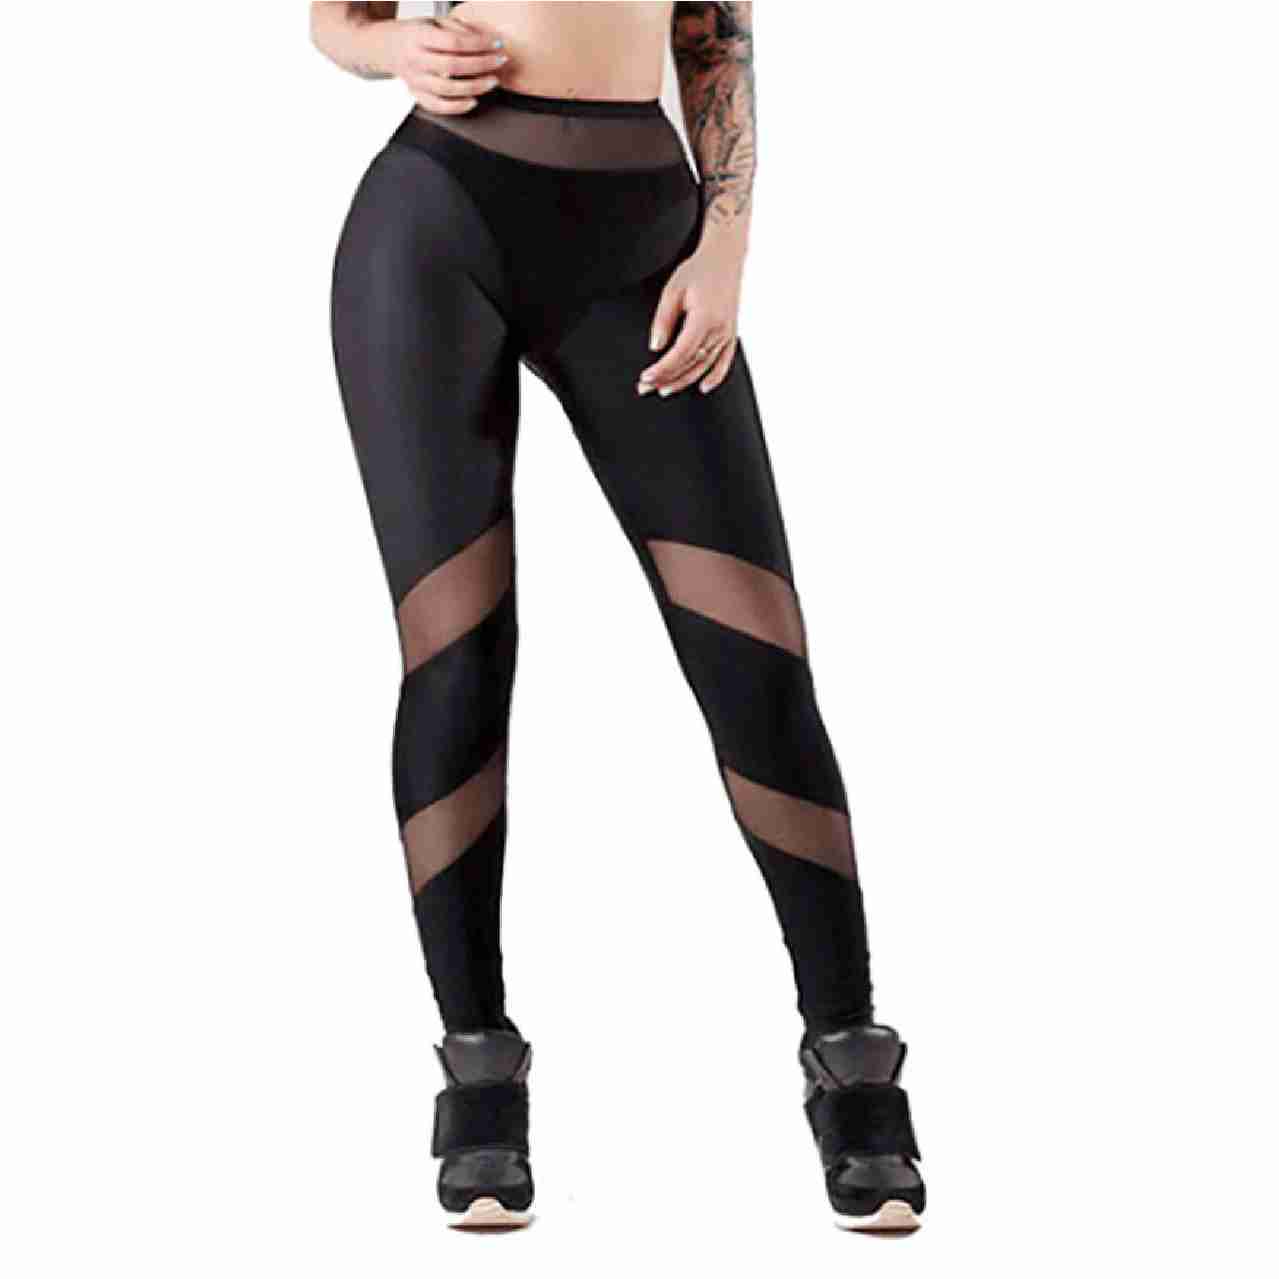 mesh-leggings-leggings-for-women-butt-lift-sexy-leggings-ant with cash back rebate